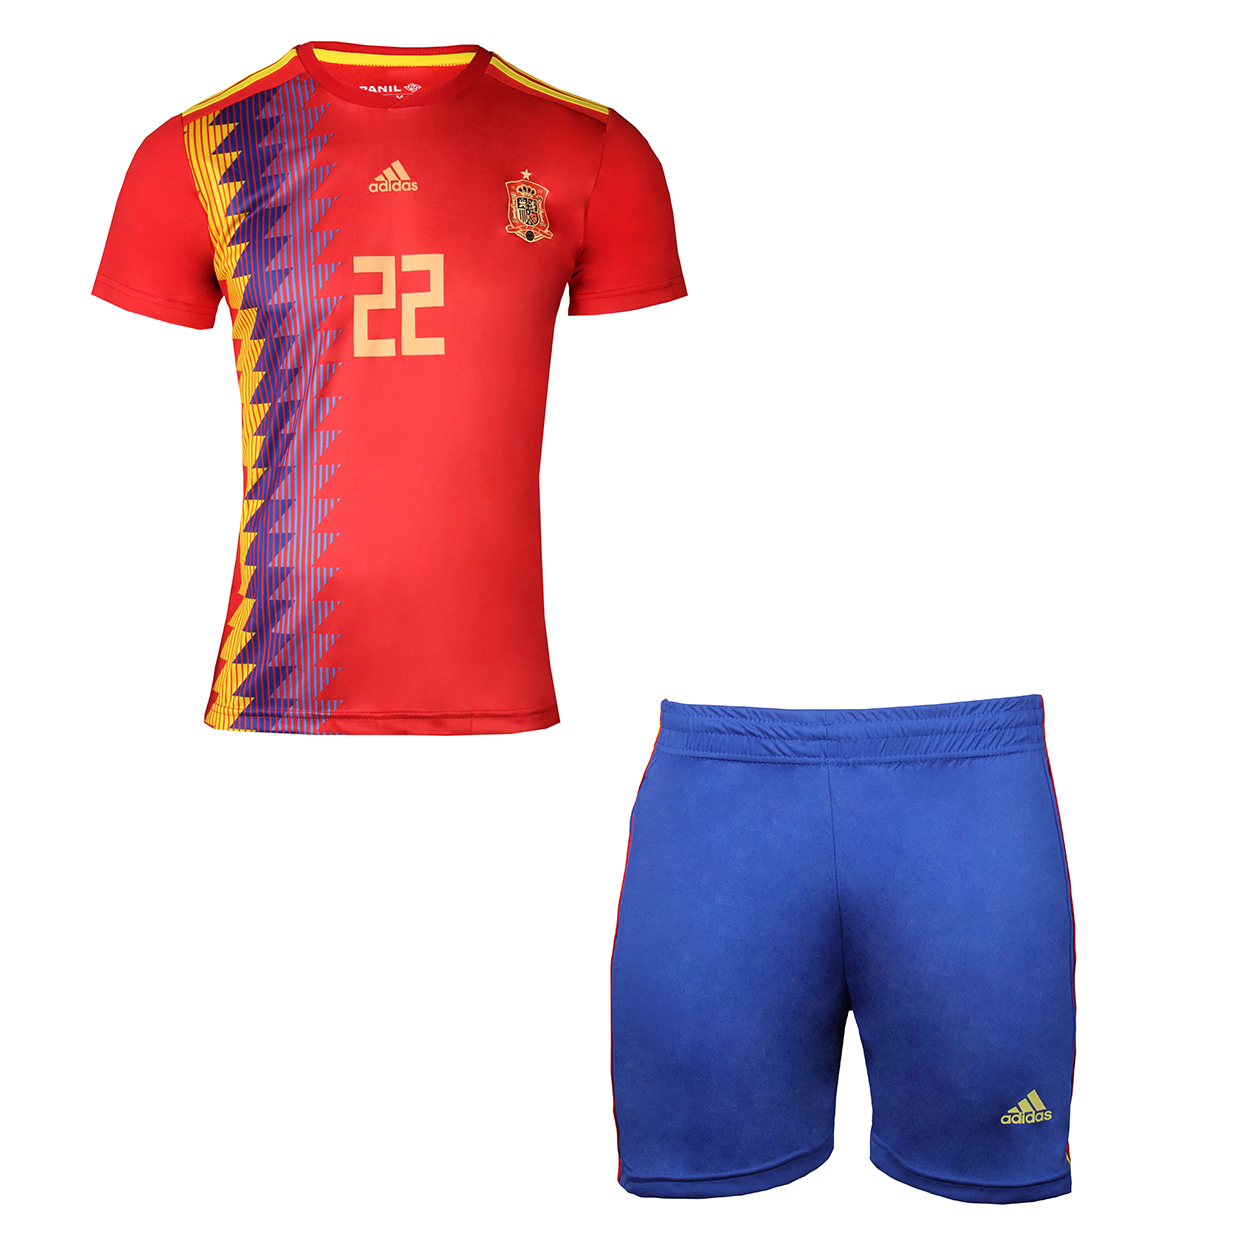 ست تی شرت و شلوارک ورزشی پسرانه طرح تیم اسپانیا کد 13047                     غیر اصل